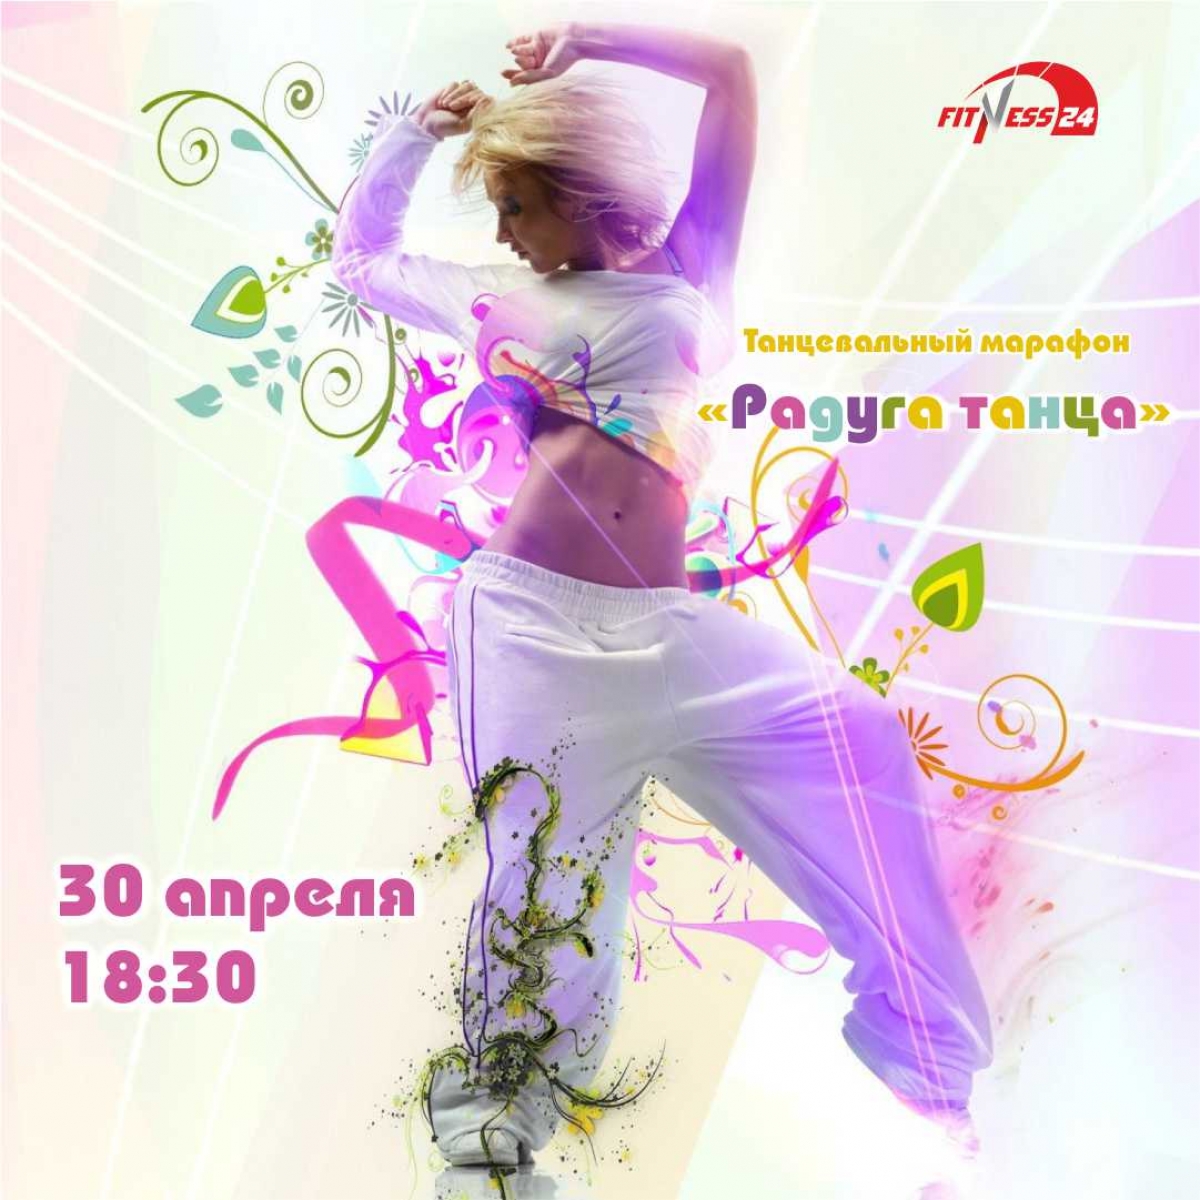 Танцевальный марафон «Радуга танца» ждёт Вас в Fitness24 Ветеранов! 